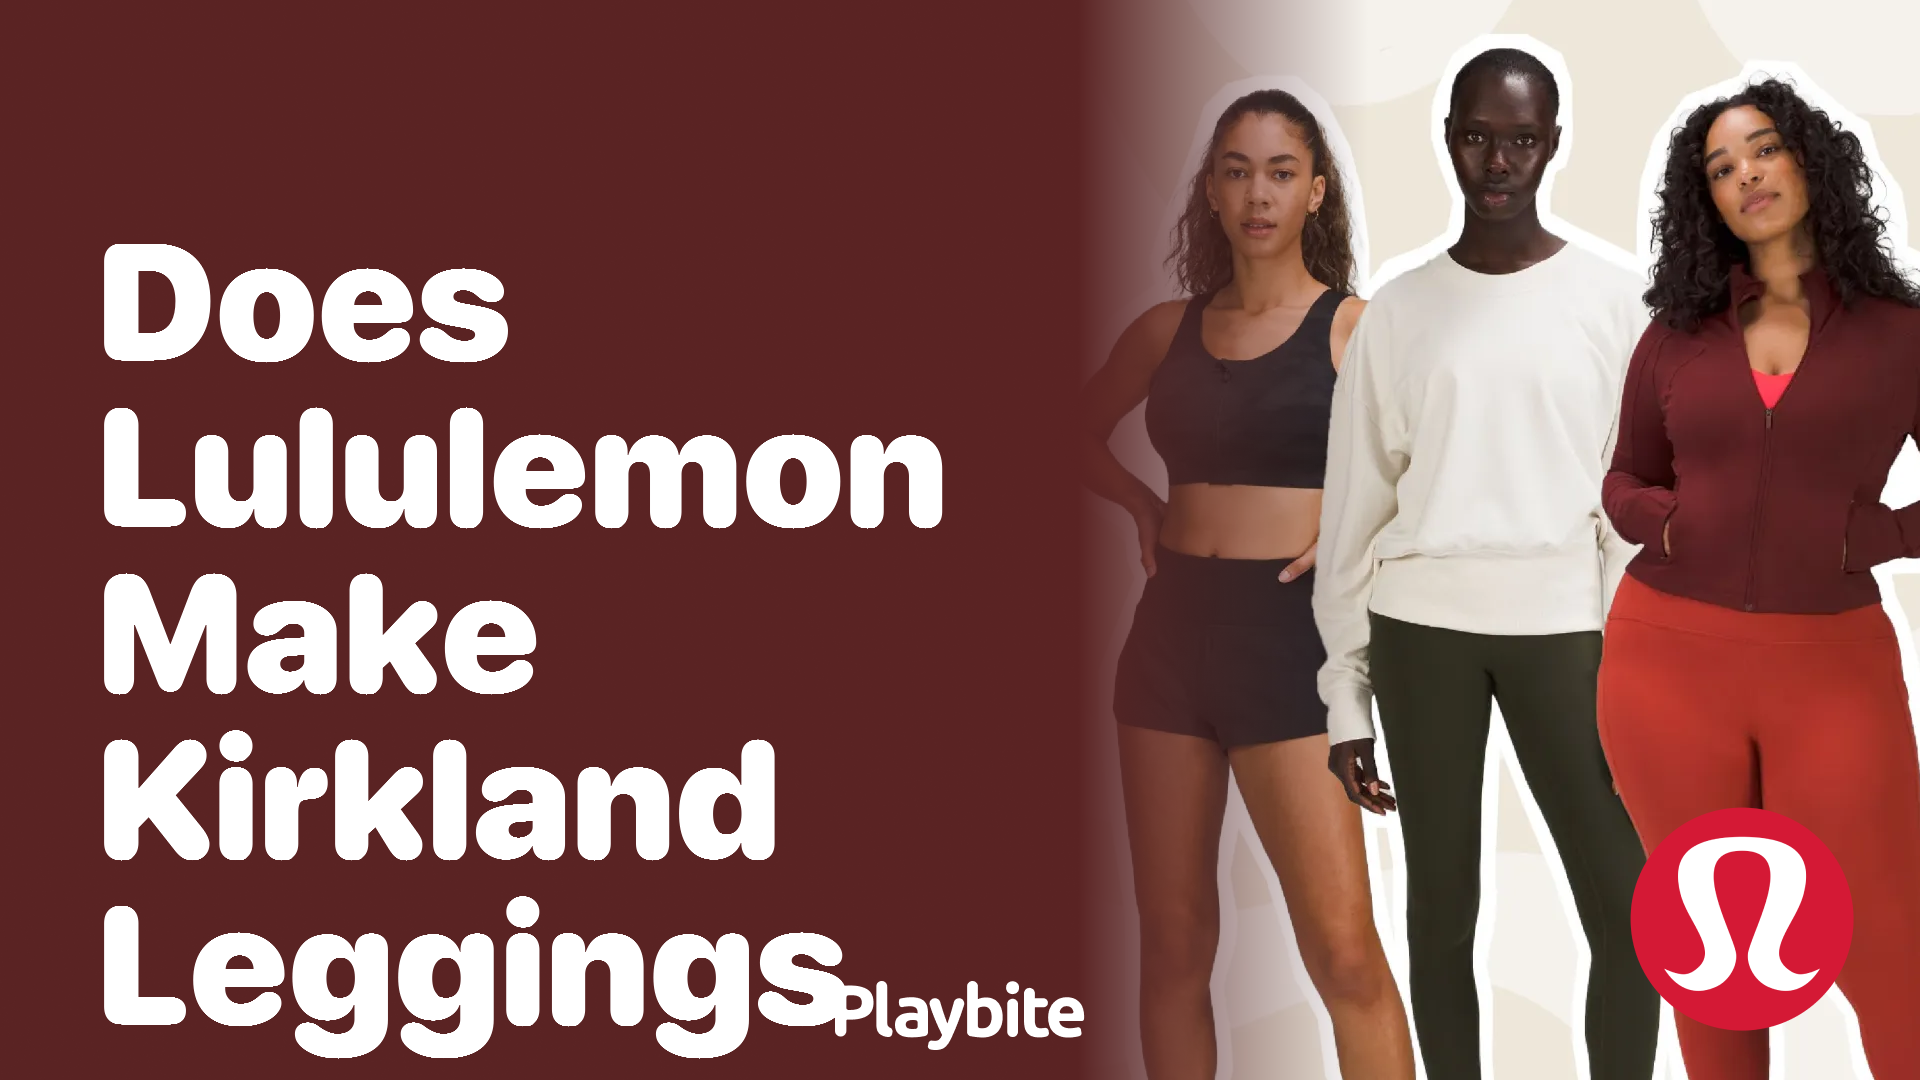 Does Lululemon Make Kirkland Leggings? - Playbite